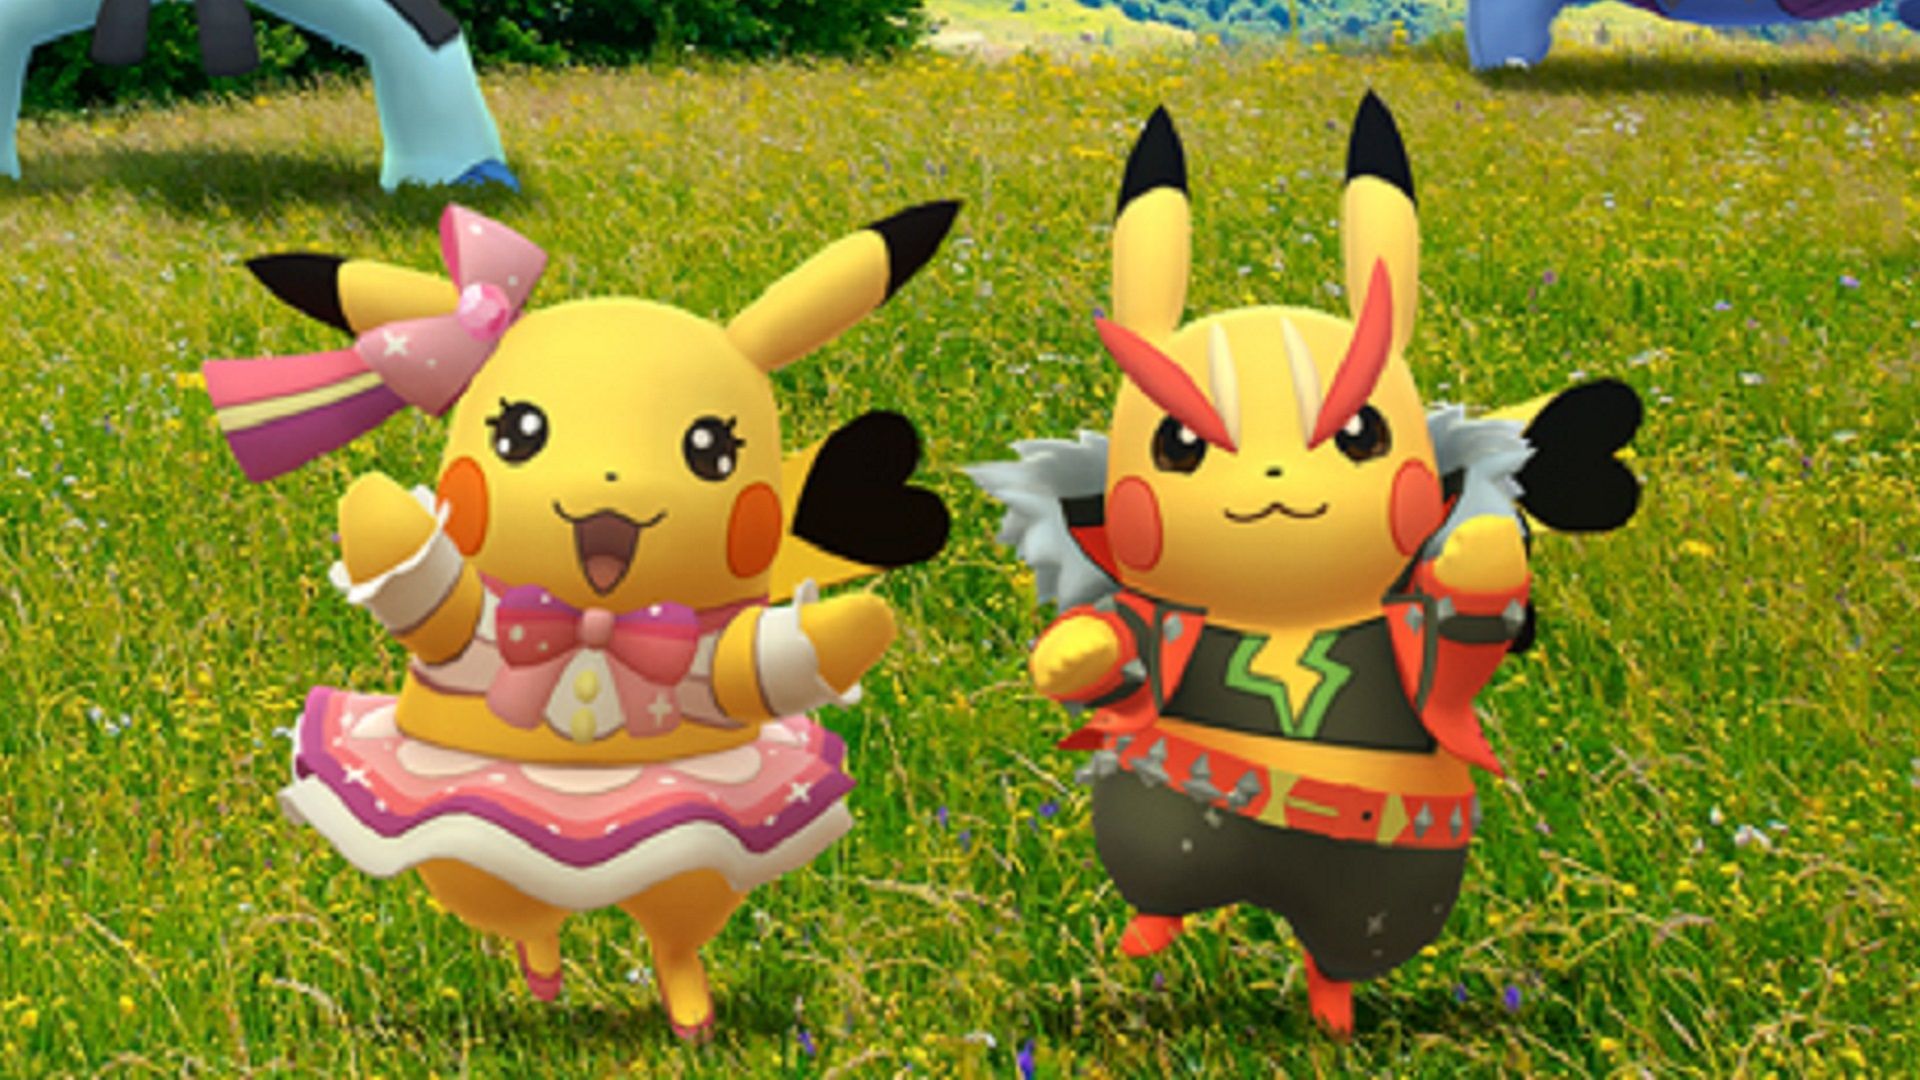 Pop-rockstaar Pikachu=pokemon Go Fest Theloadout